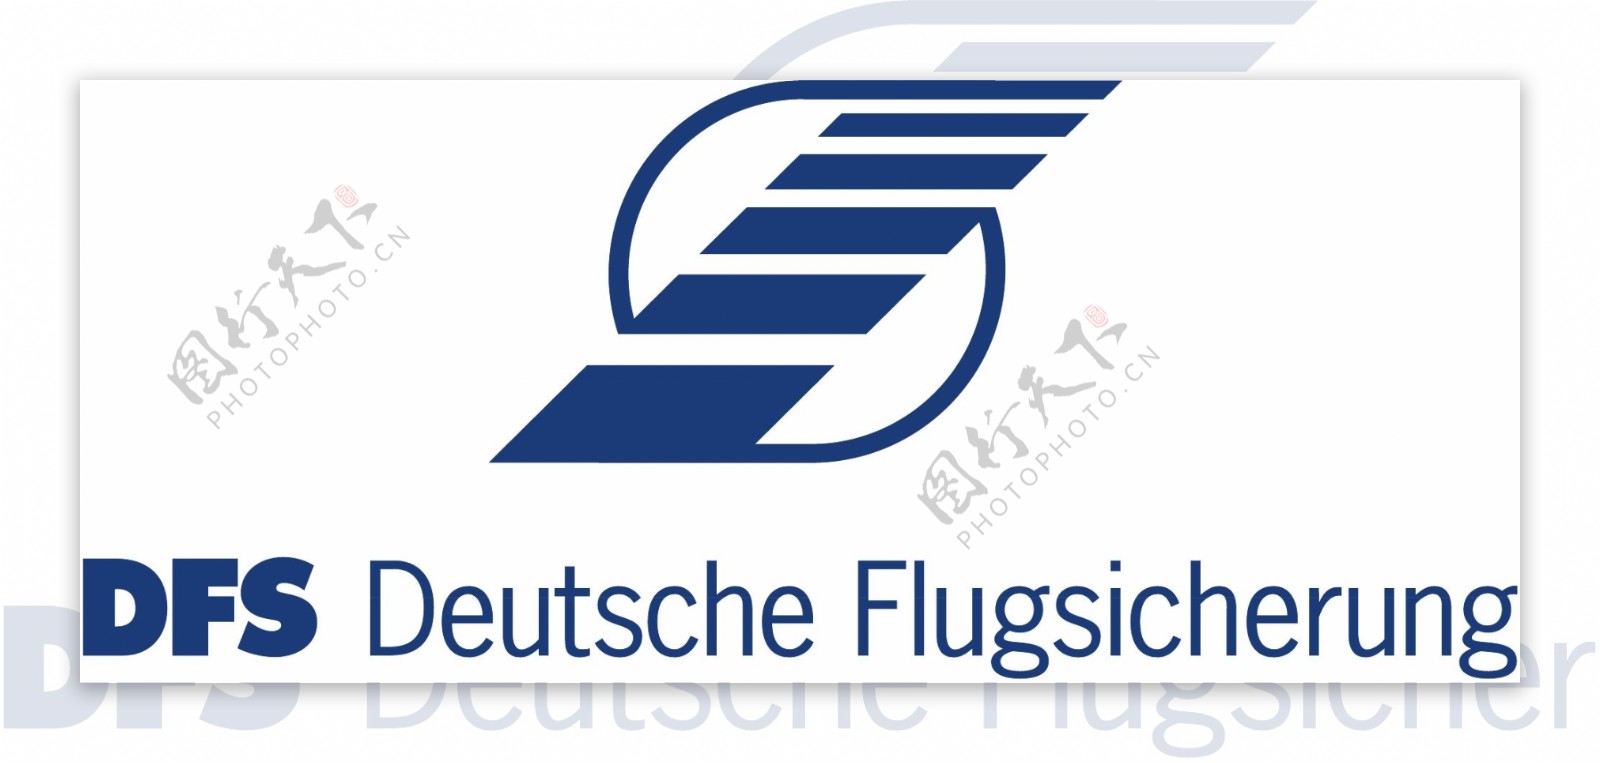 DFS德国flugsicherung有限公司